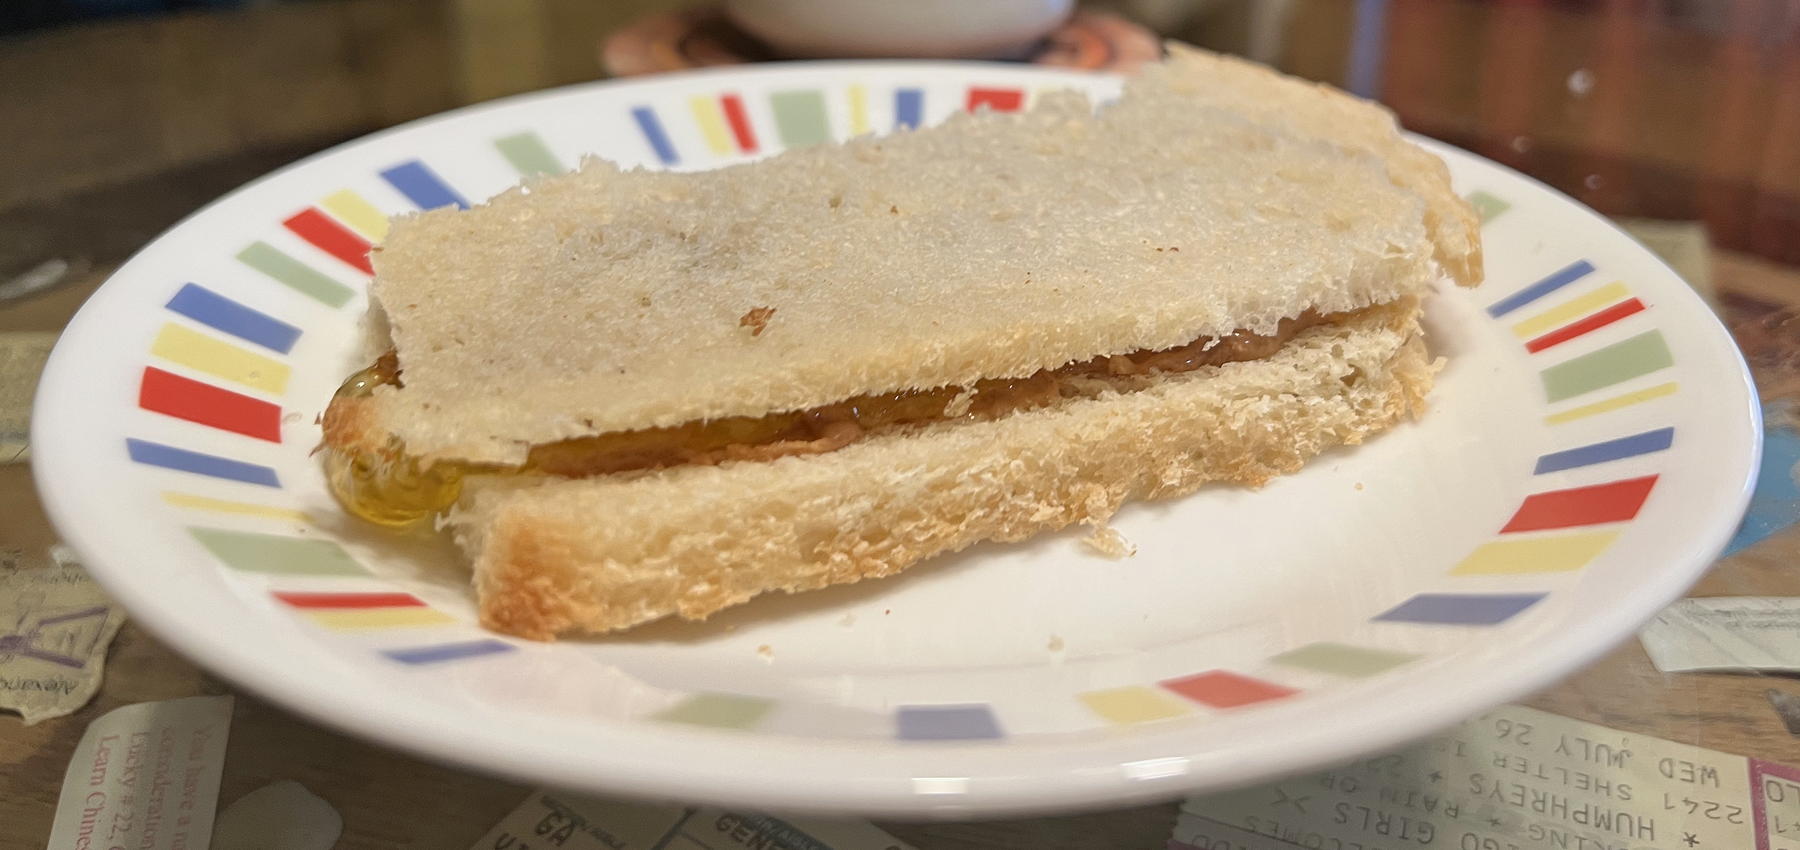 Peanut butter sandwich on potato bread